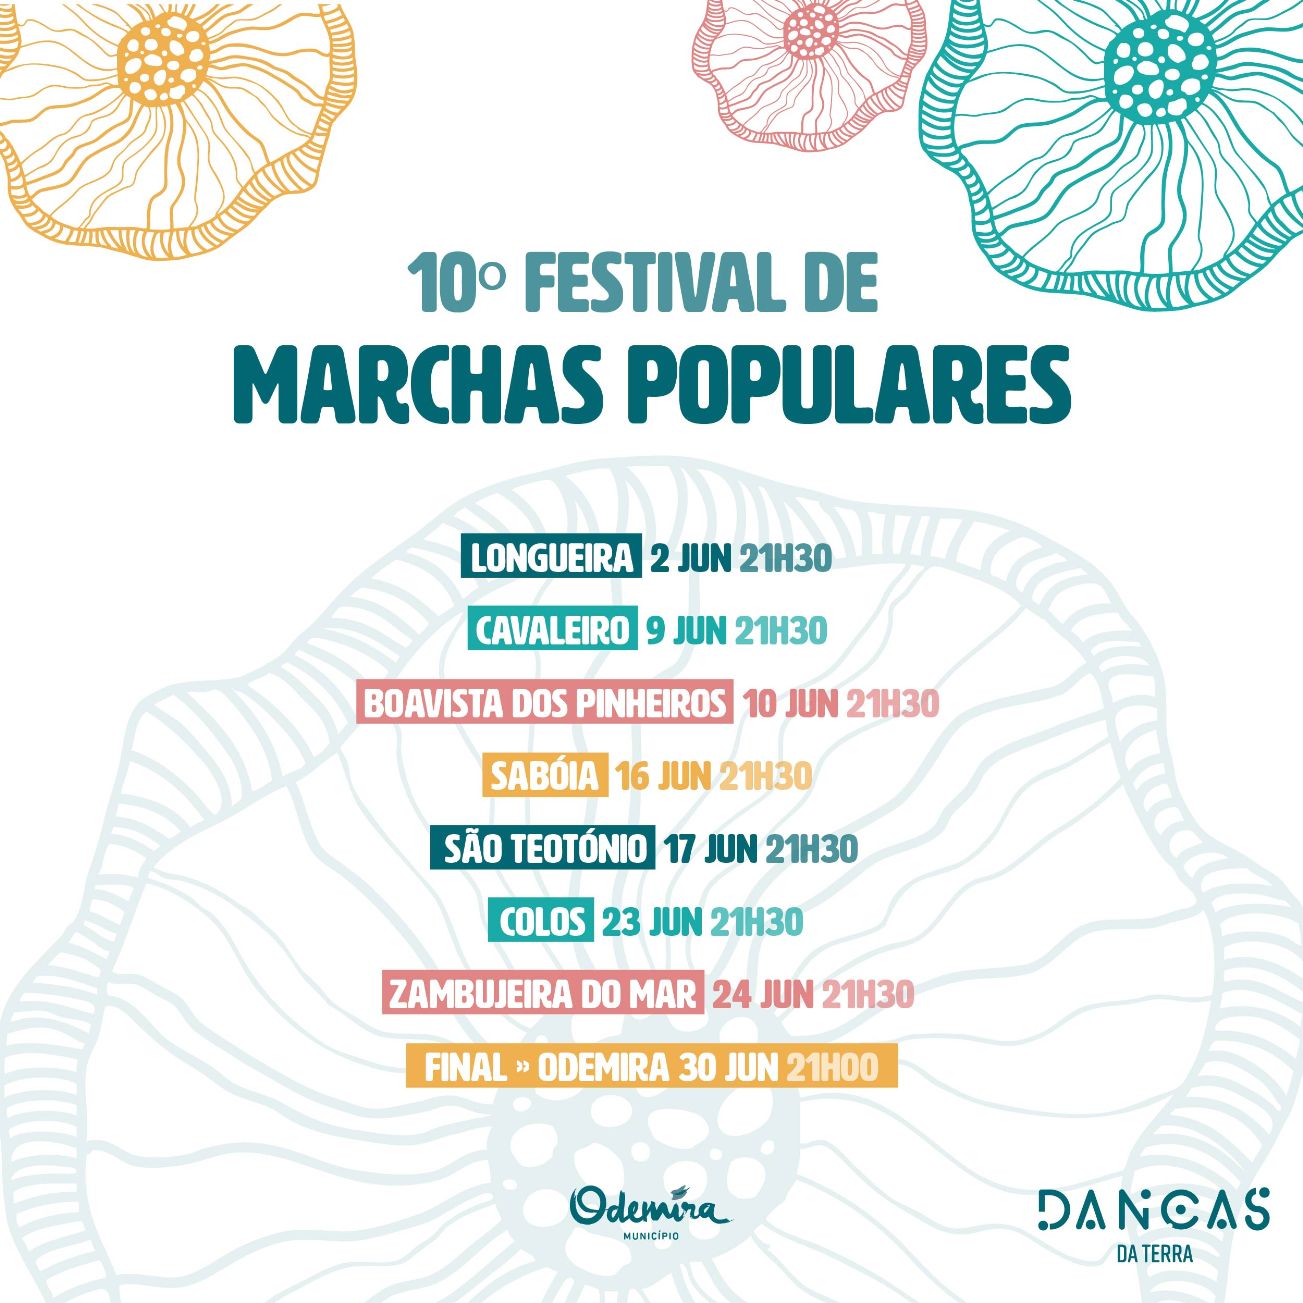 Festival de Marchas Populares anima Concelho de Odemira